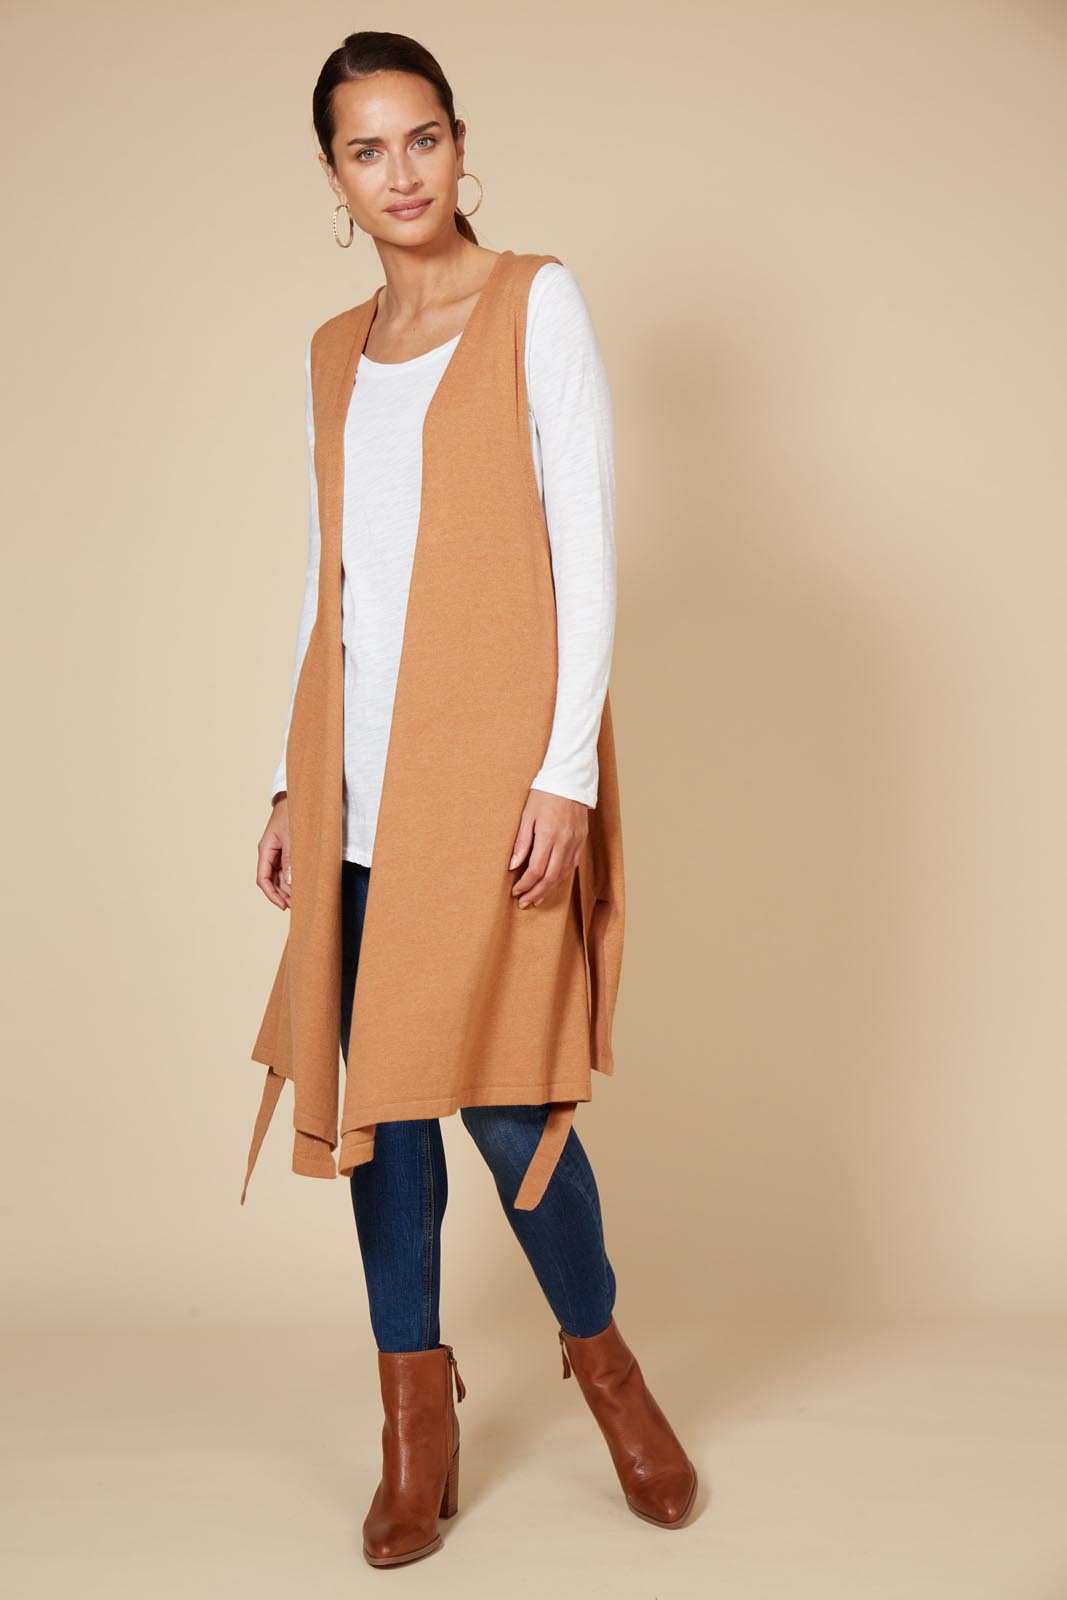 Cleo Longline Vest - Caramel - eb&ive Clothing - Knit Vest Long One Size